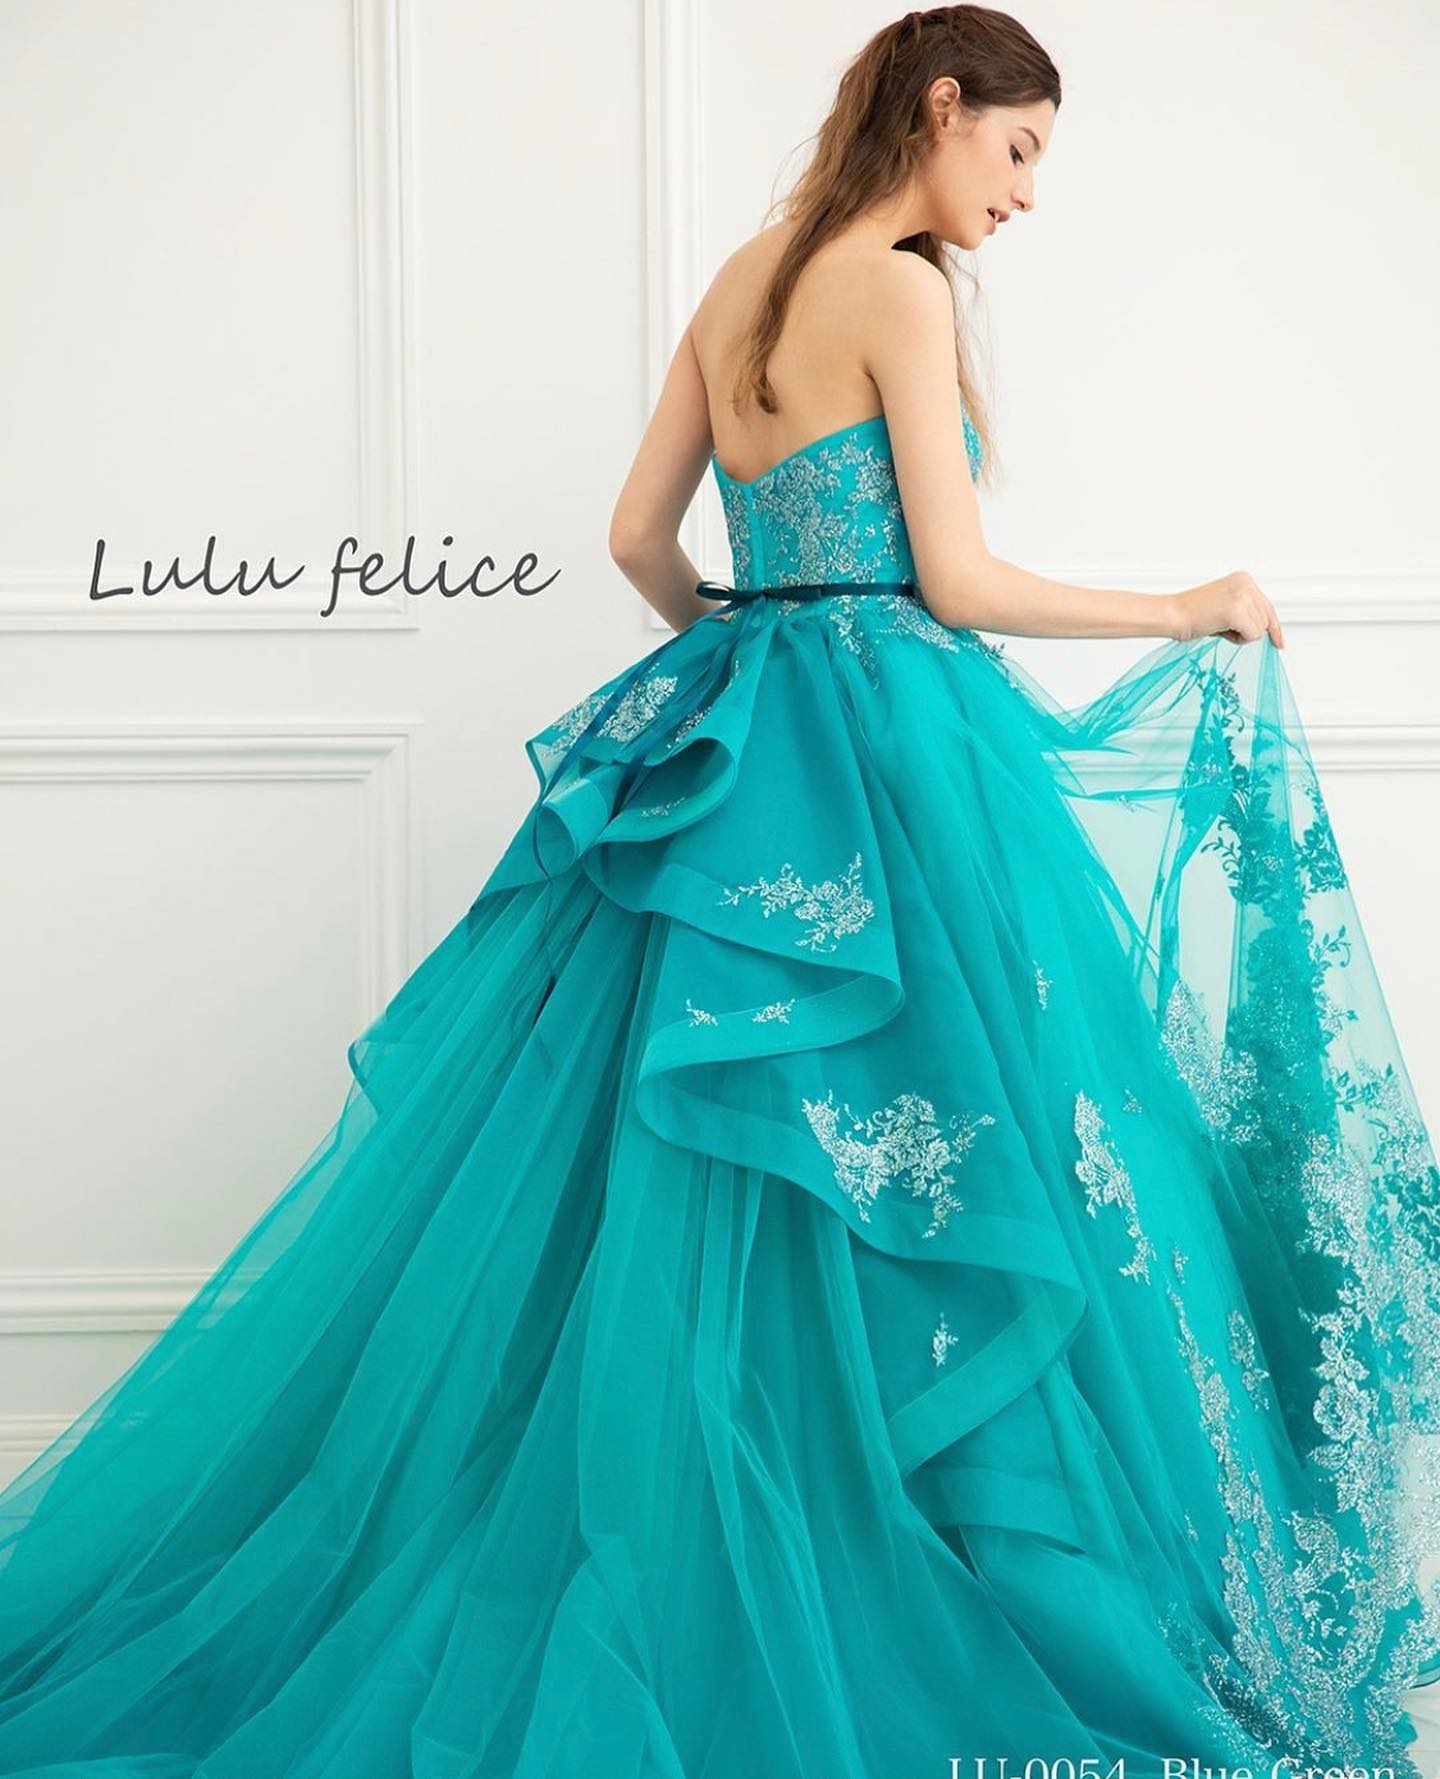 本日はLuLu felice（ルル フェリーチェ）のカラードレスをご紹介・深みのある色合いと裾にあしらわれた上品なグリッターが美しいブルーグリーンのドレス・バックスタイルはペプラム使いでほど良いボリュームがあり華やかな印象高級感と可愛らしさをあわせ持つ魅力的な一着です・ご試着いかがでしょうか・【Lulu felice】LU-0054・#wedding #weddingdress #bridalhiro  #lulufelice#ウェディングドレス #プレ花嫁 #ドレス試着　#ヘアメイク #結婚式  #ドレス選び #前撮り #後撮り #フォトウェディング　#ウェディングヘア  #フォト婚 #前撮り写真　#ブライダルフォト #カップルフォト #ウェディングドレス探し #ウェディングドレス試着　#レンタルドレス #ドレスショップ #家族婚 #ブライダルヒロ #ゼクシィ #プリンセスライン #ドレス迷子 #ルルフェリーチェ